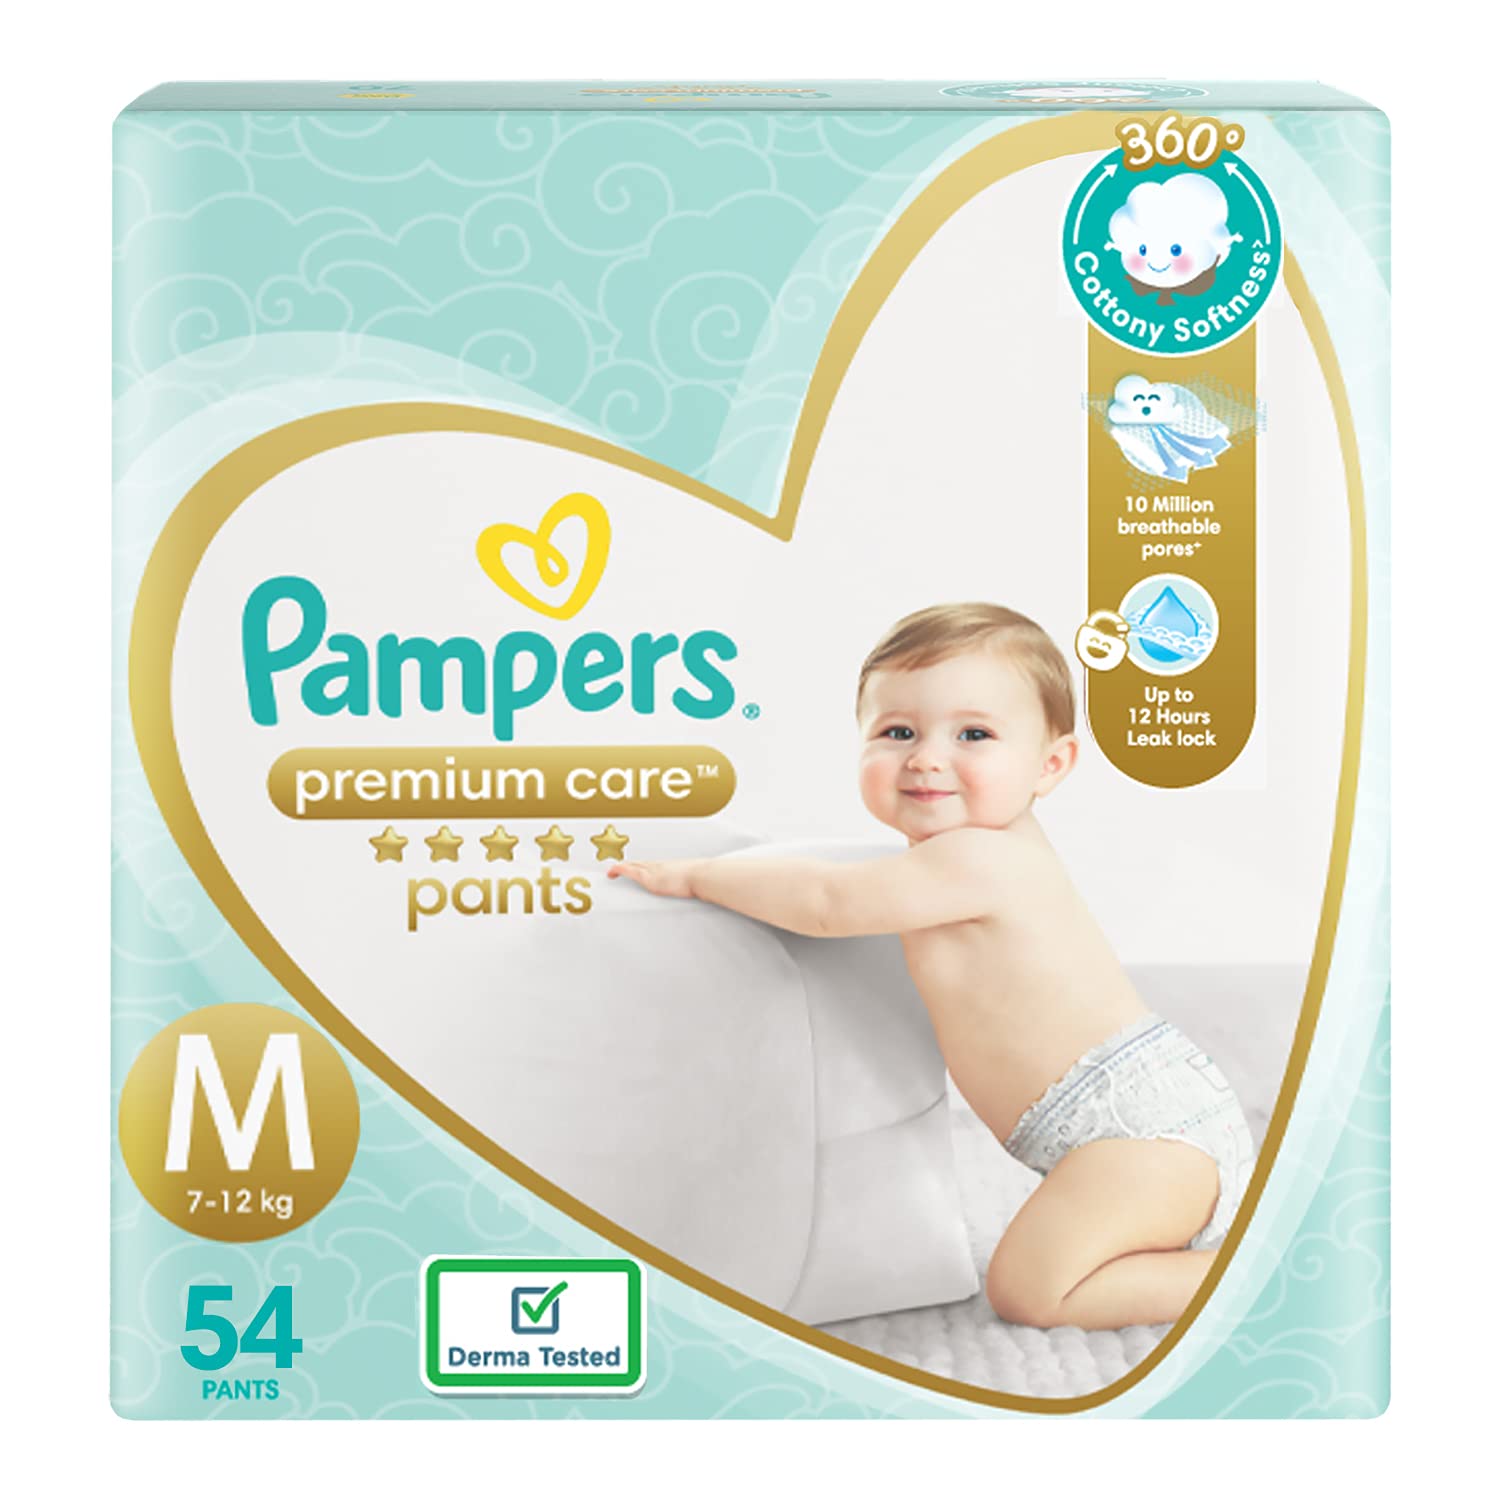 Buy Pampers Pants Diapers Medium Size 3 62 Count Online in Pakistan-  Medonline.pk